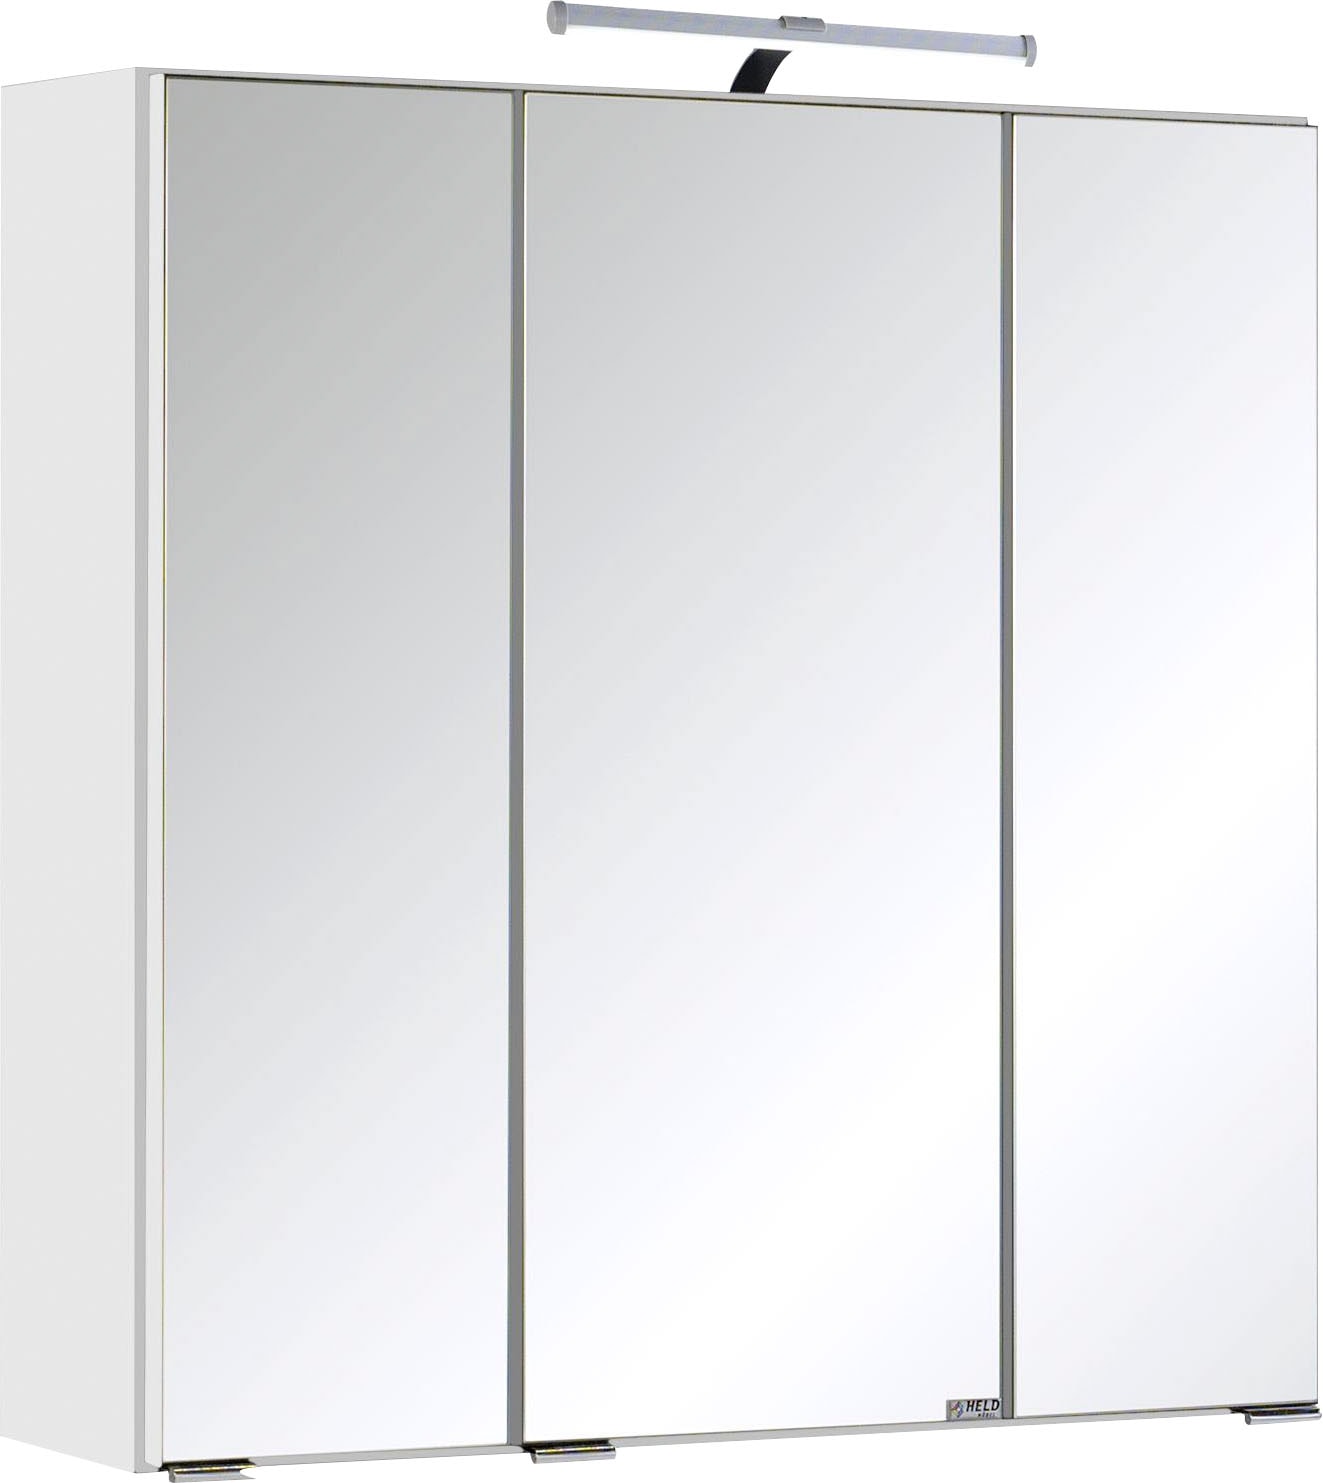 HELD MÖBEL Spiegelschrank »Trento, verschiedene Ausführungen und Farben«, Breite 60 cm, mit 3D-Effekt, Spiegeltüren, Inklusive LED-Beleuchtung